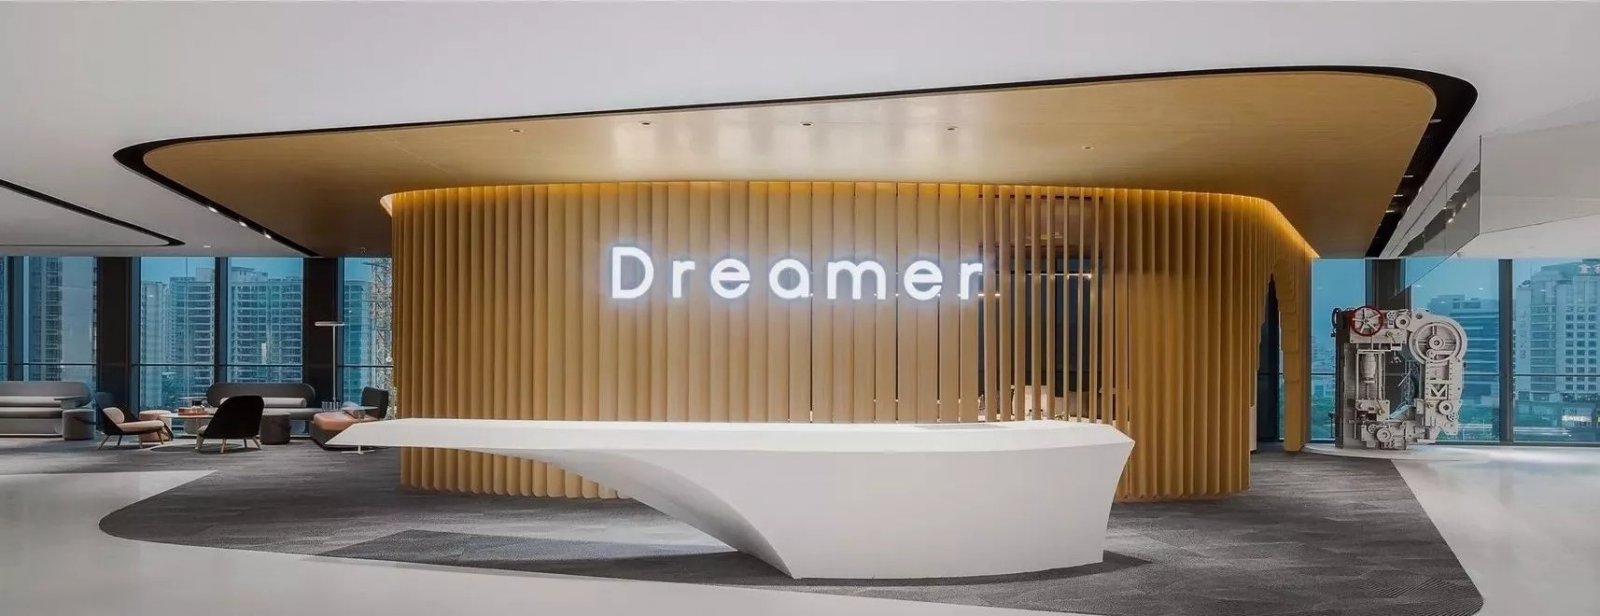 梦想发动机——现代简约风办公空间设计  置美优合-4